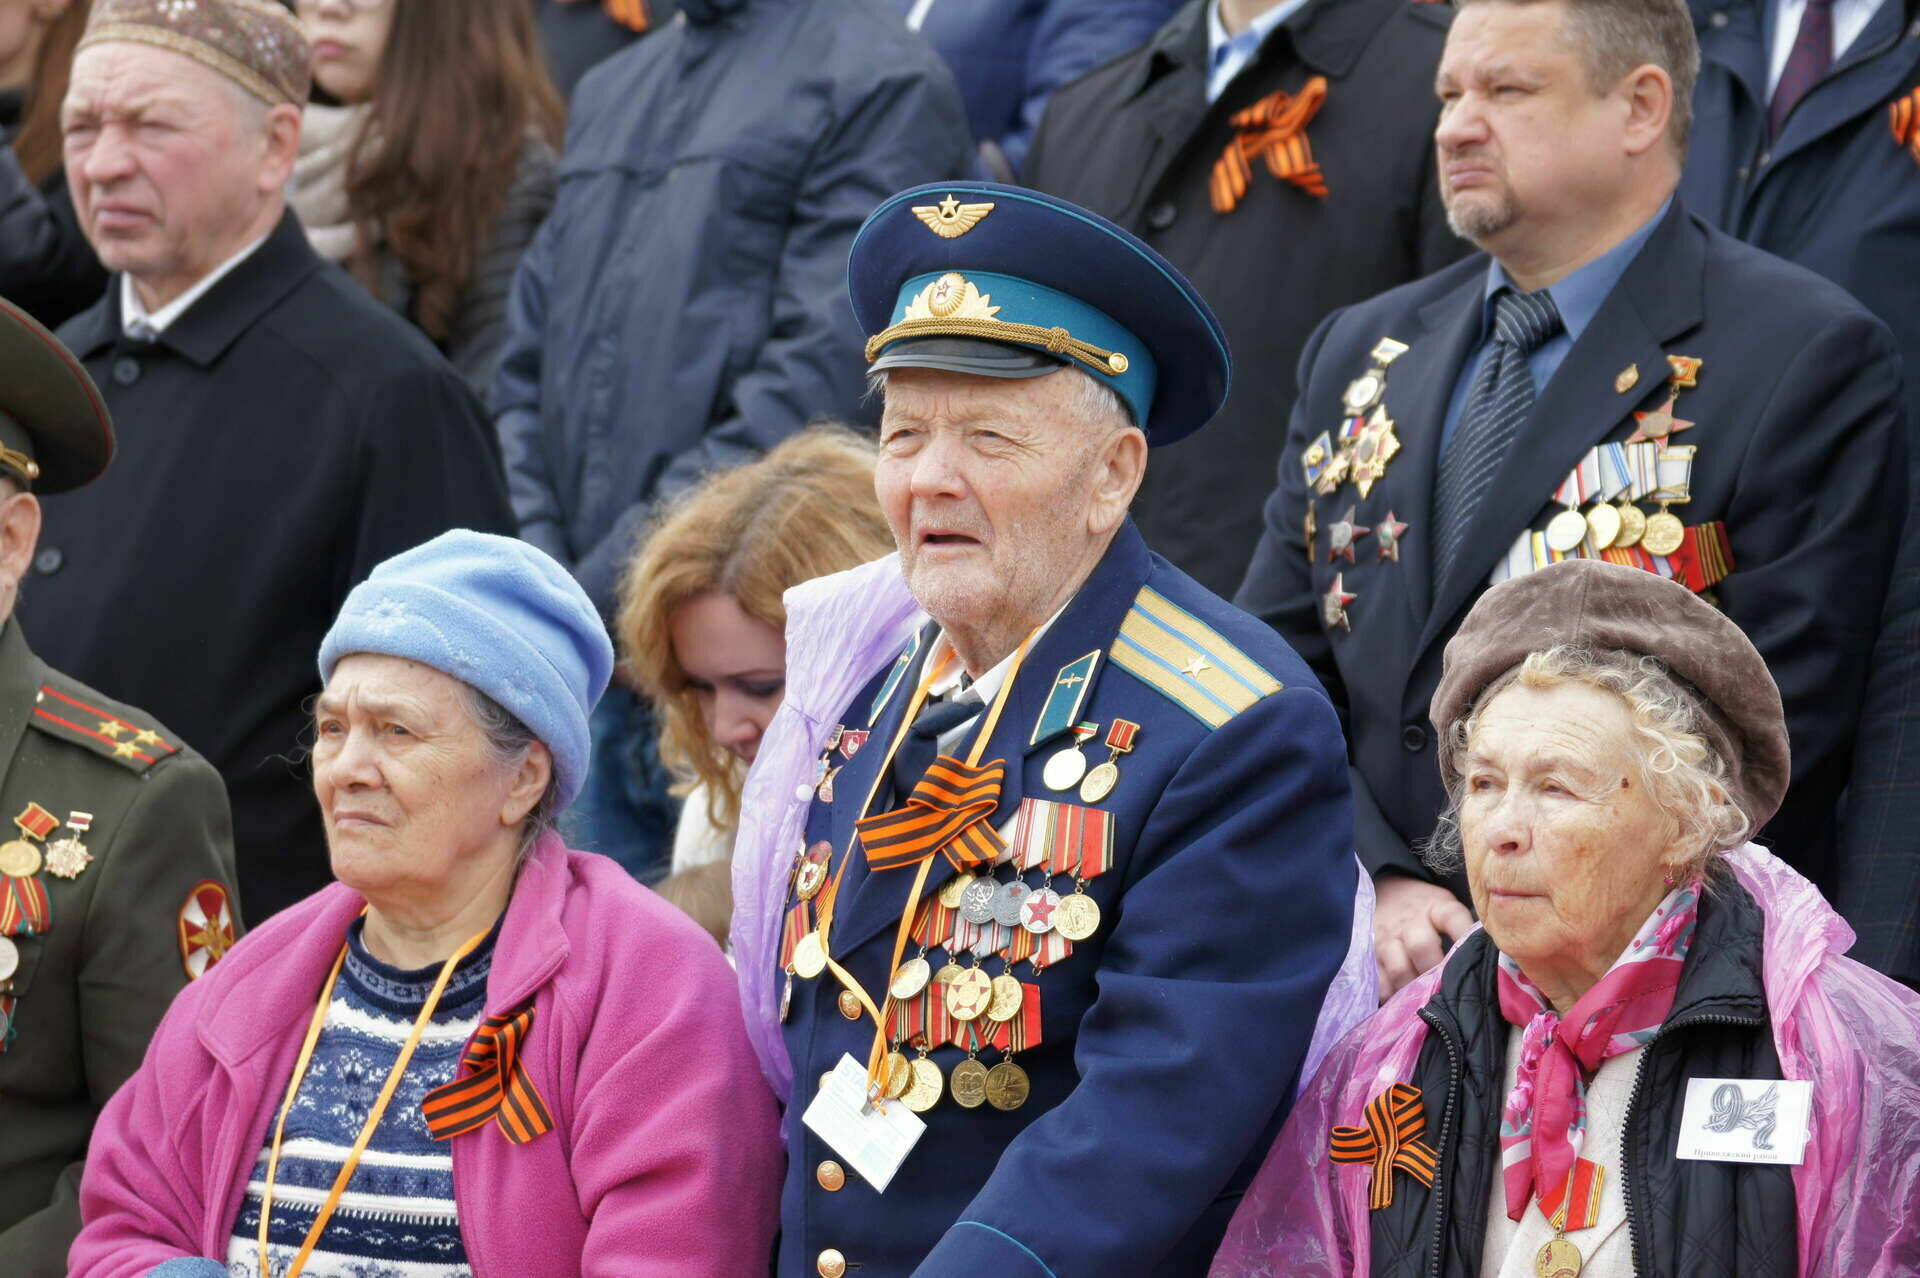 Путин подписал указ о выплате ветеранам к 75-летию Победы